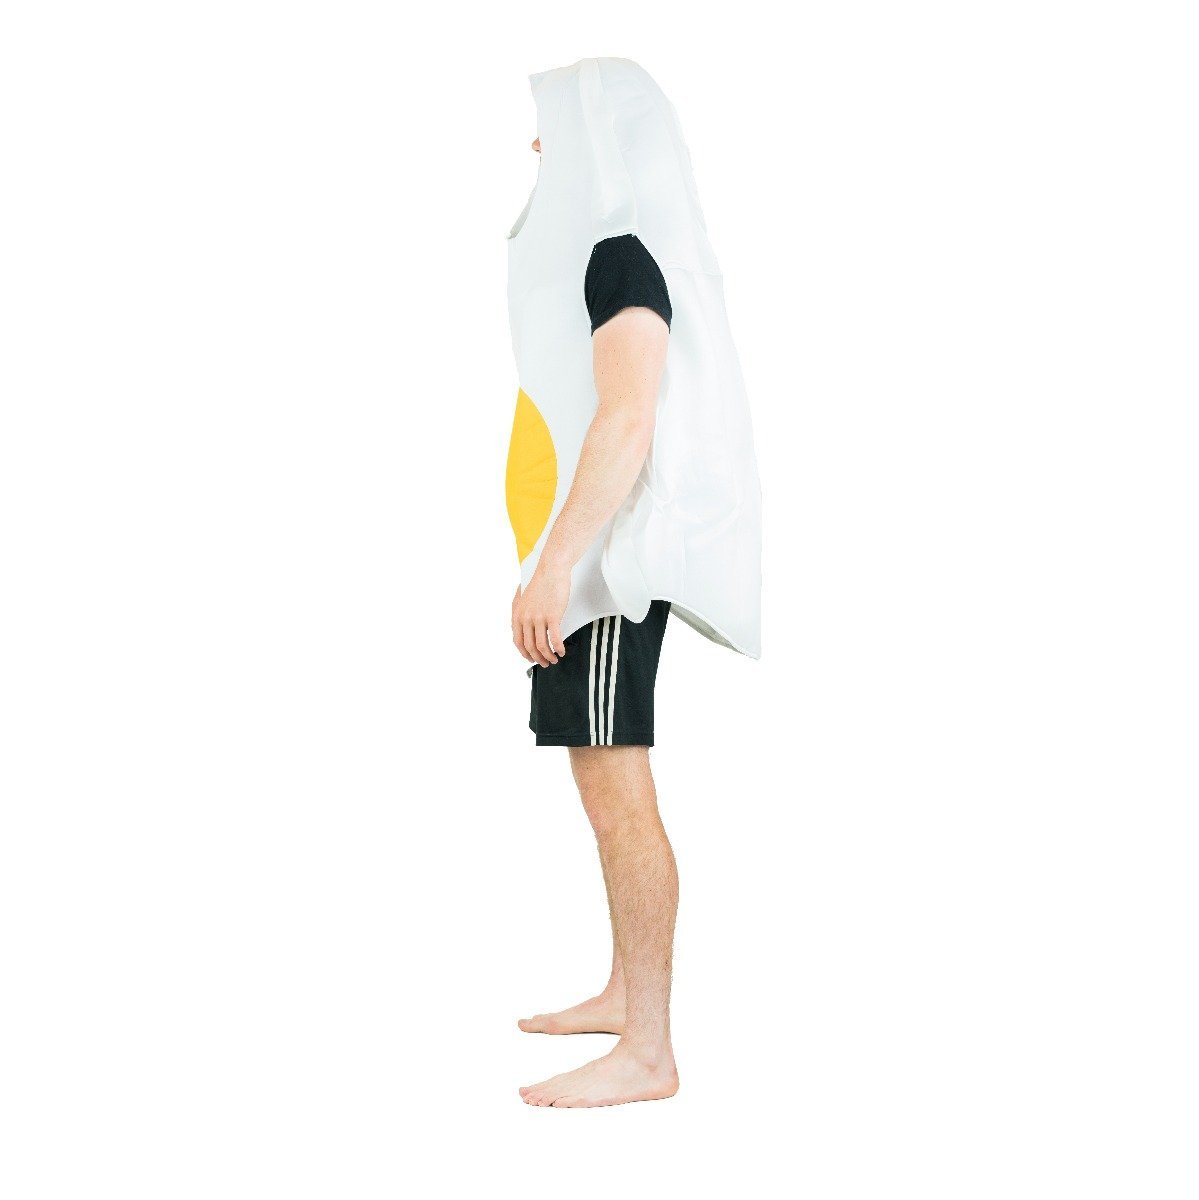 Bodysocks - Egg Costume